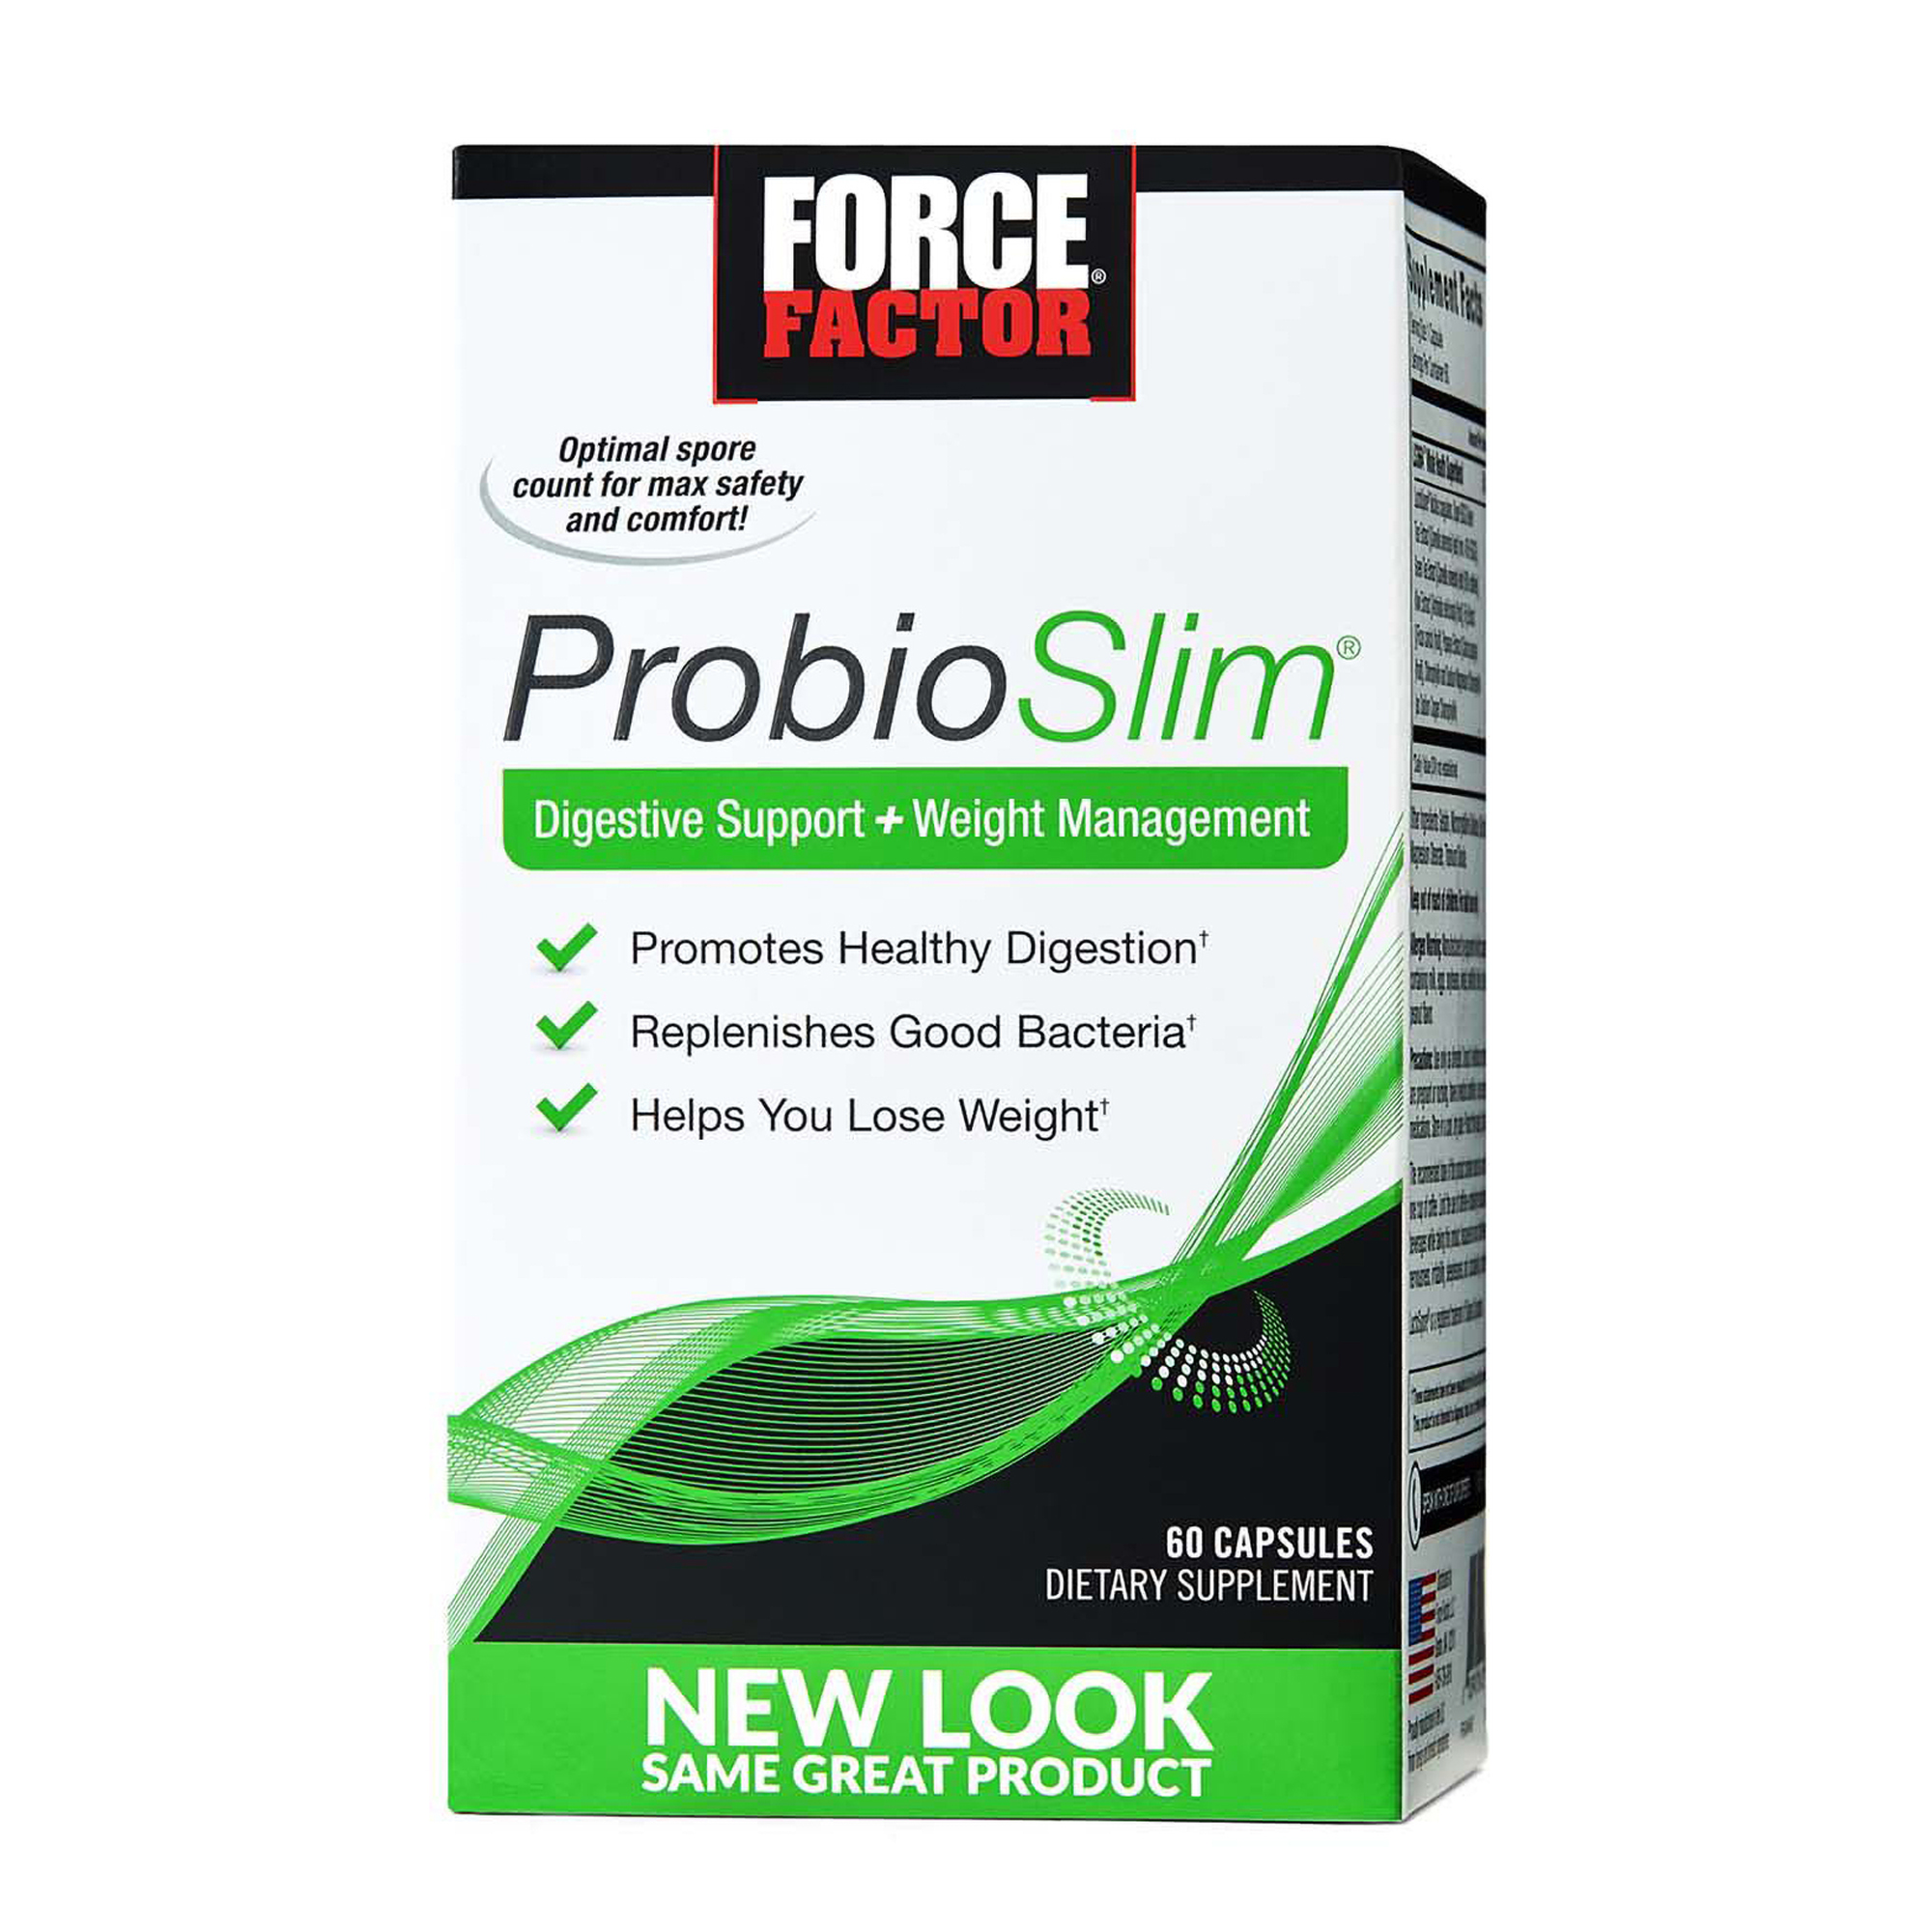 Force Factor ProbioSlim with Next-Gen SLIMVANCE Probiotic Fat